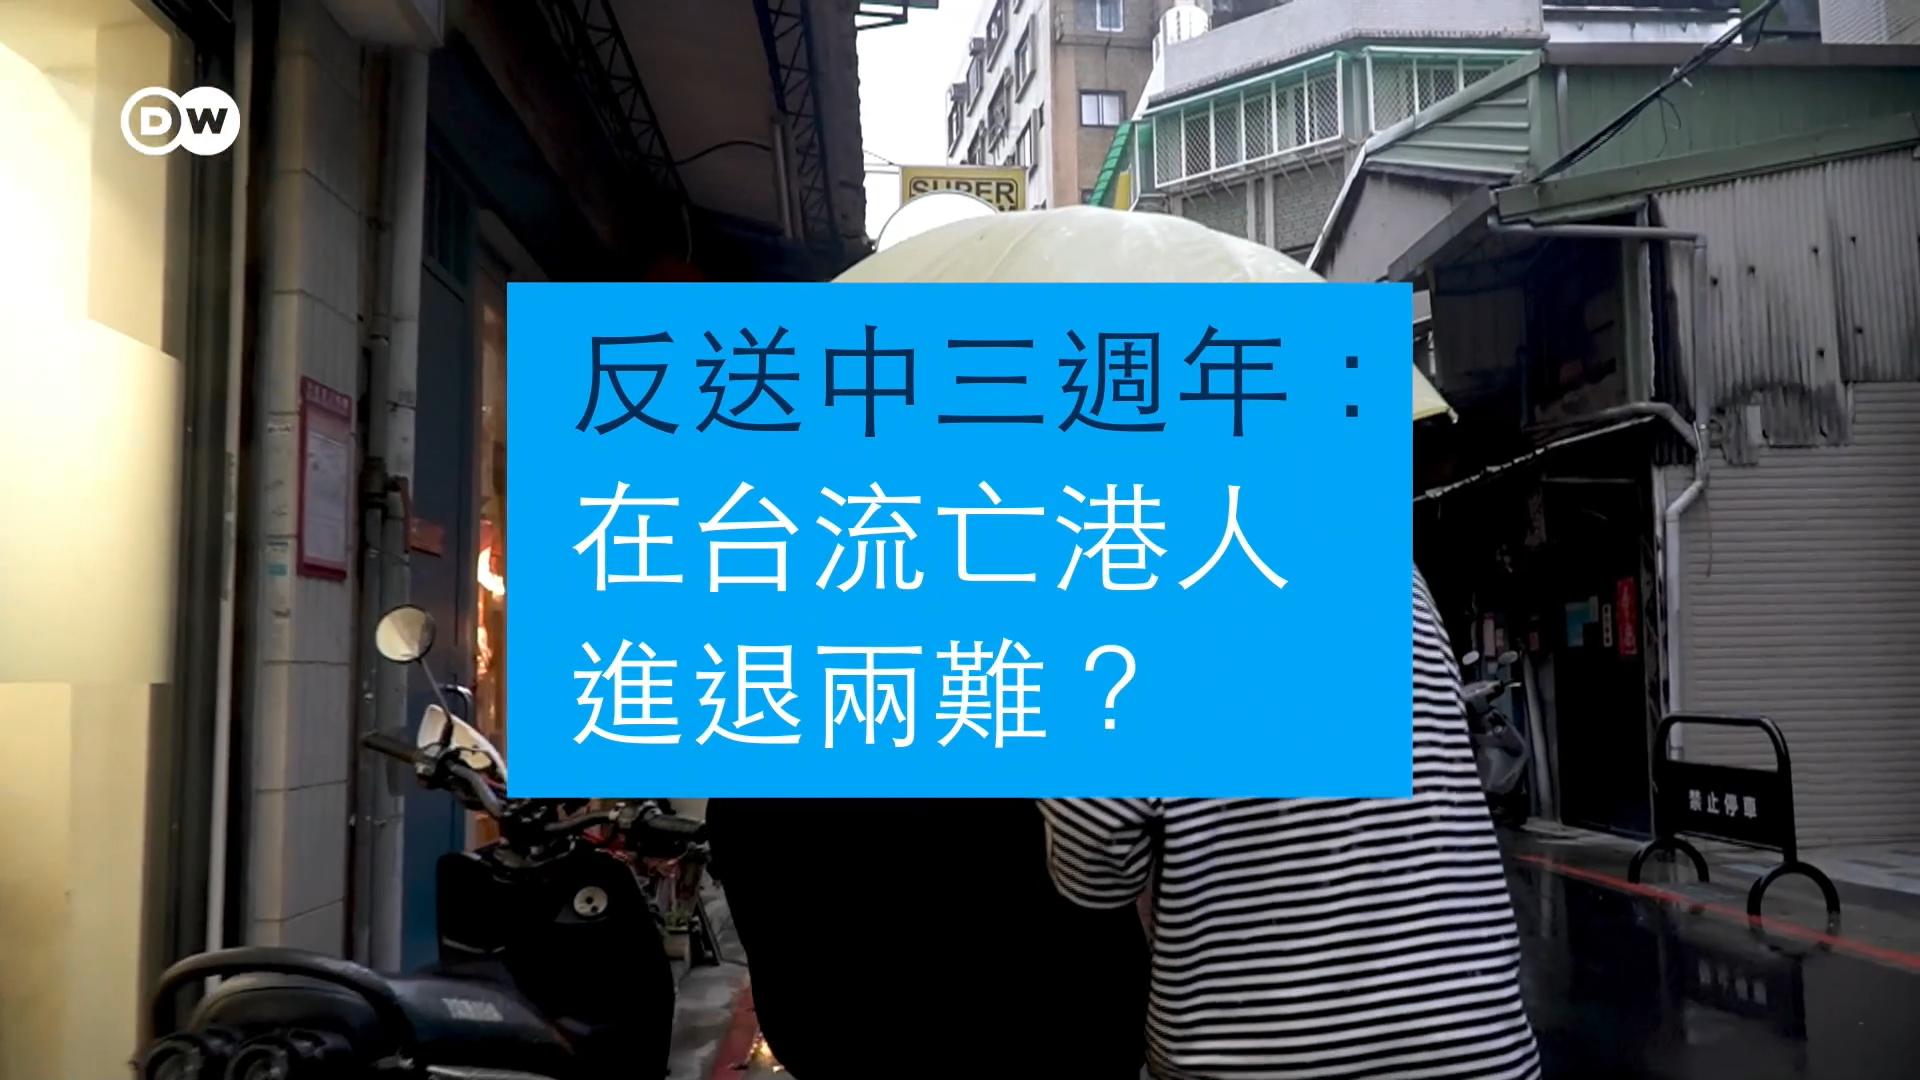 2019年香港反送中运动爆发后，台湾政界多次公开挺港，但有别于西方国家，这份同情并未落实为具体政策。另一方面，台海局勢持续升温，也加剧了台湾社会对中共渗透的疑虑，在台港人因此面对更多关卡。他们三年前逃到台湾，今日再次面对去留抉择。